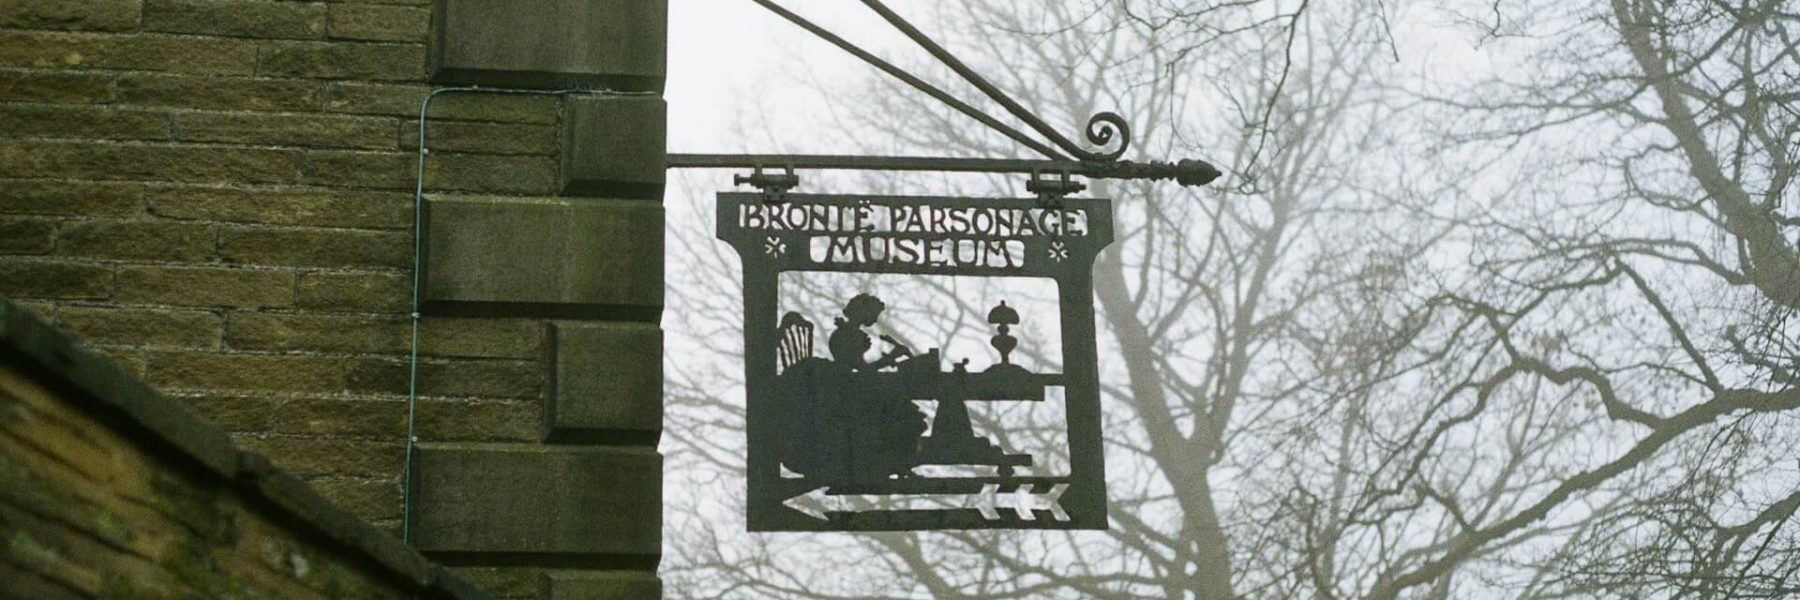 Alt text para una imagen del cartel del Museo Bronte, situado en Haworth, Inglaterra, dedicado a las famosas hermanas Bronte.